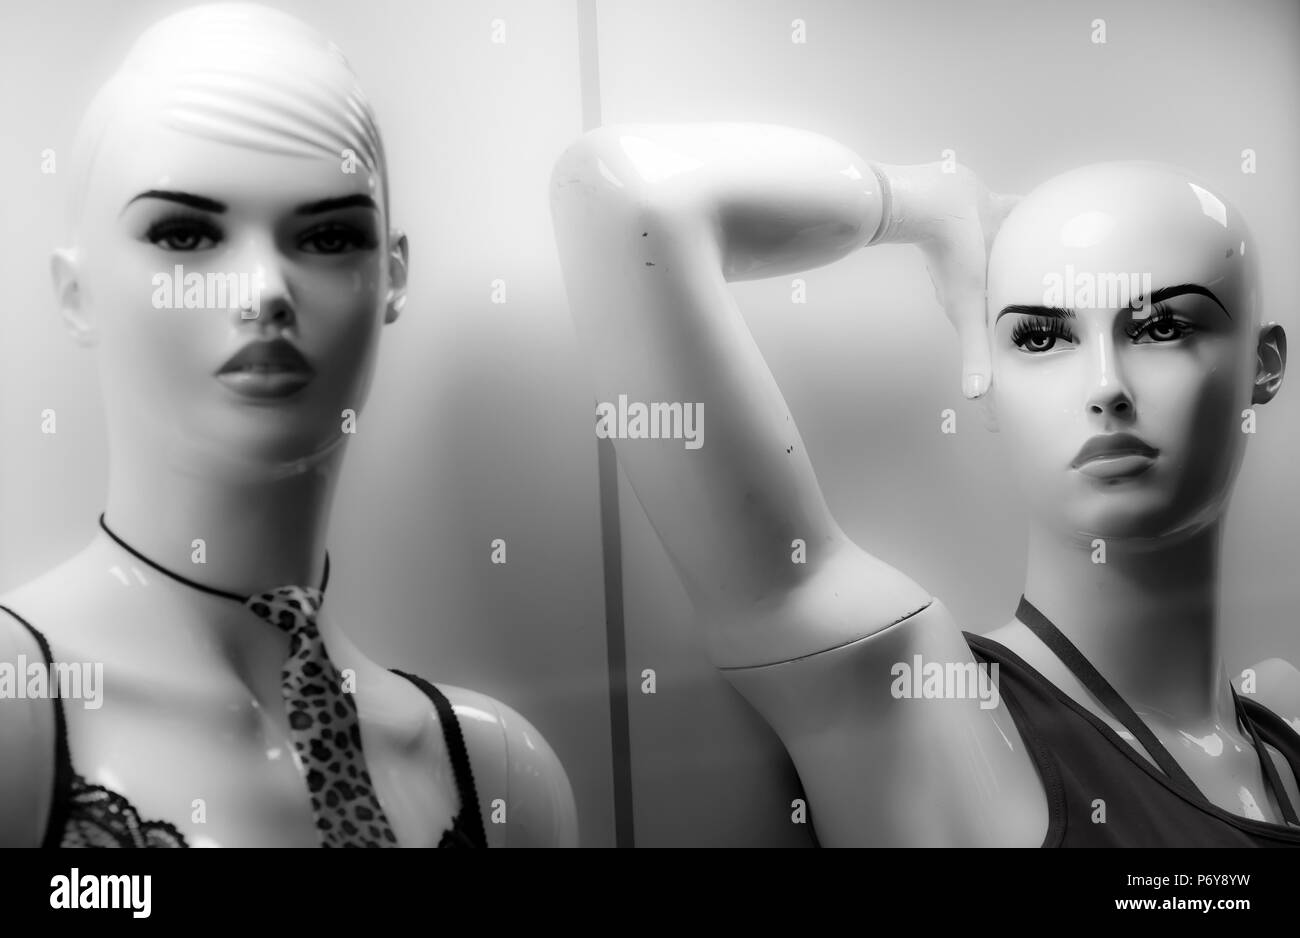 In prossimità dei due manichini femmina visualizzato n la vetrina del negozio in bianco e nero Foto Stock